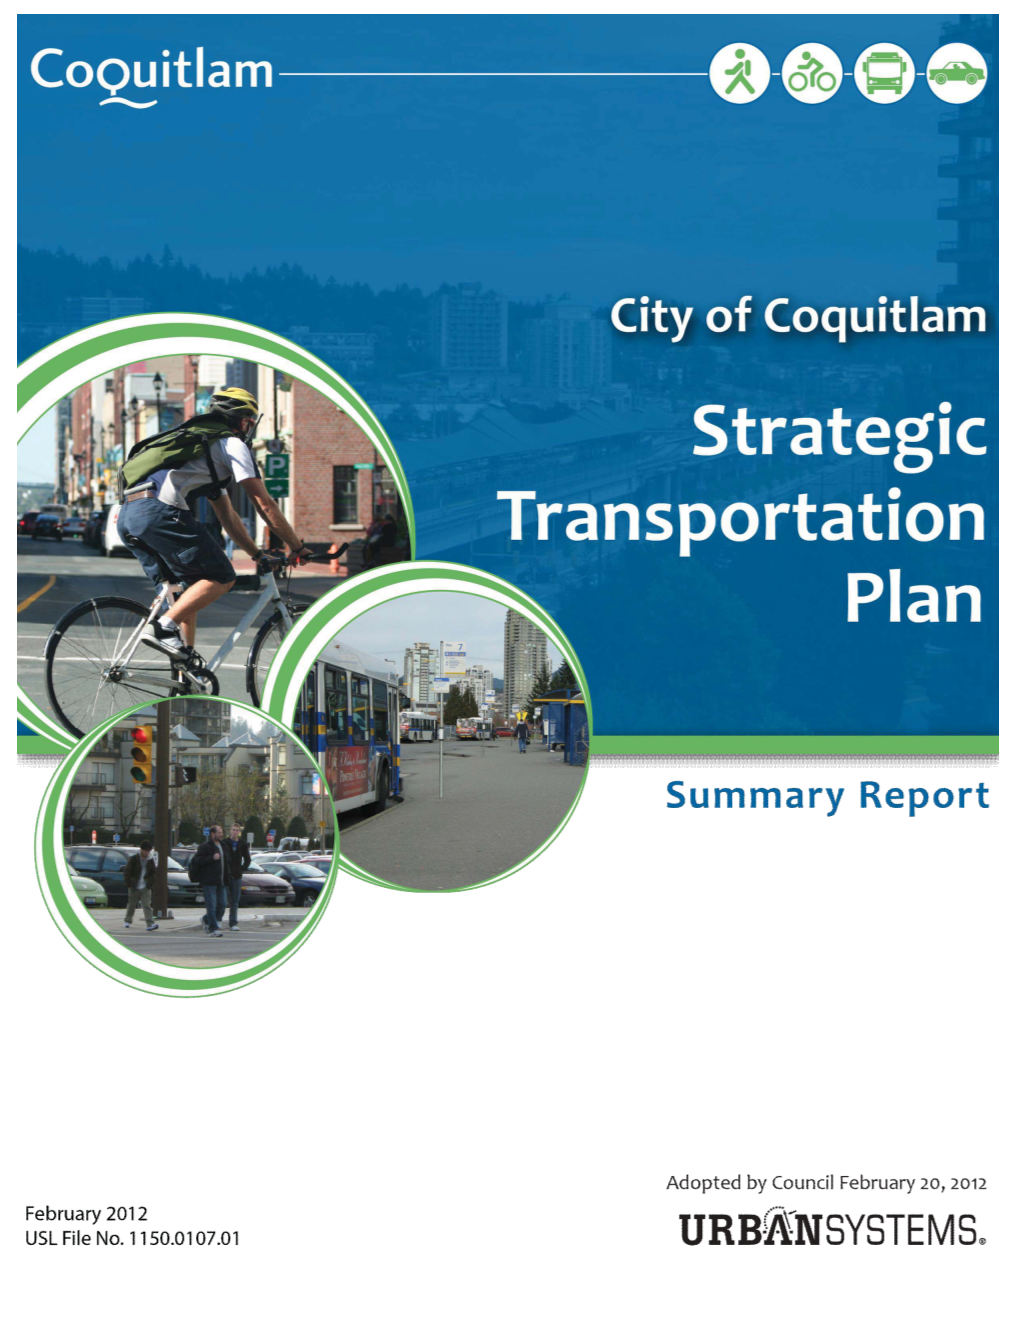 Strategic Transportation Plan Summary Report